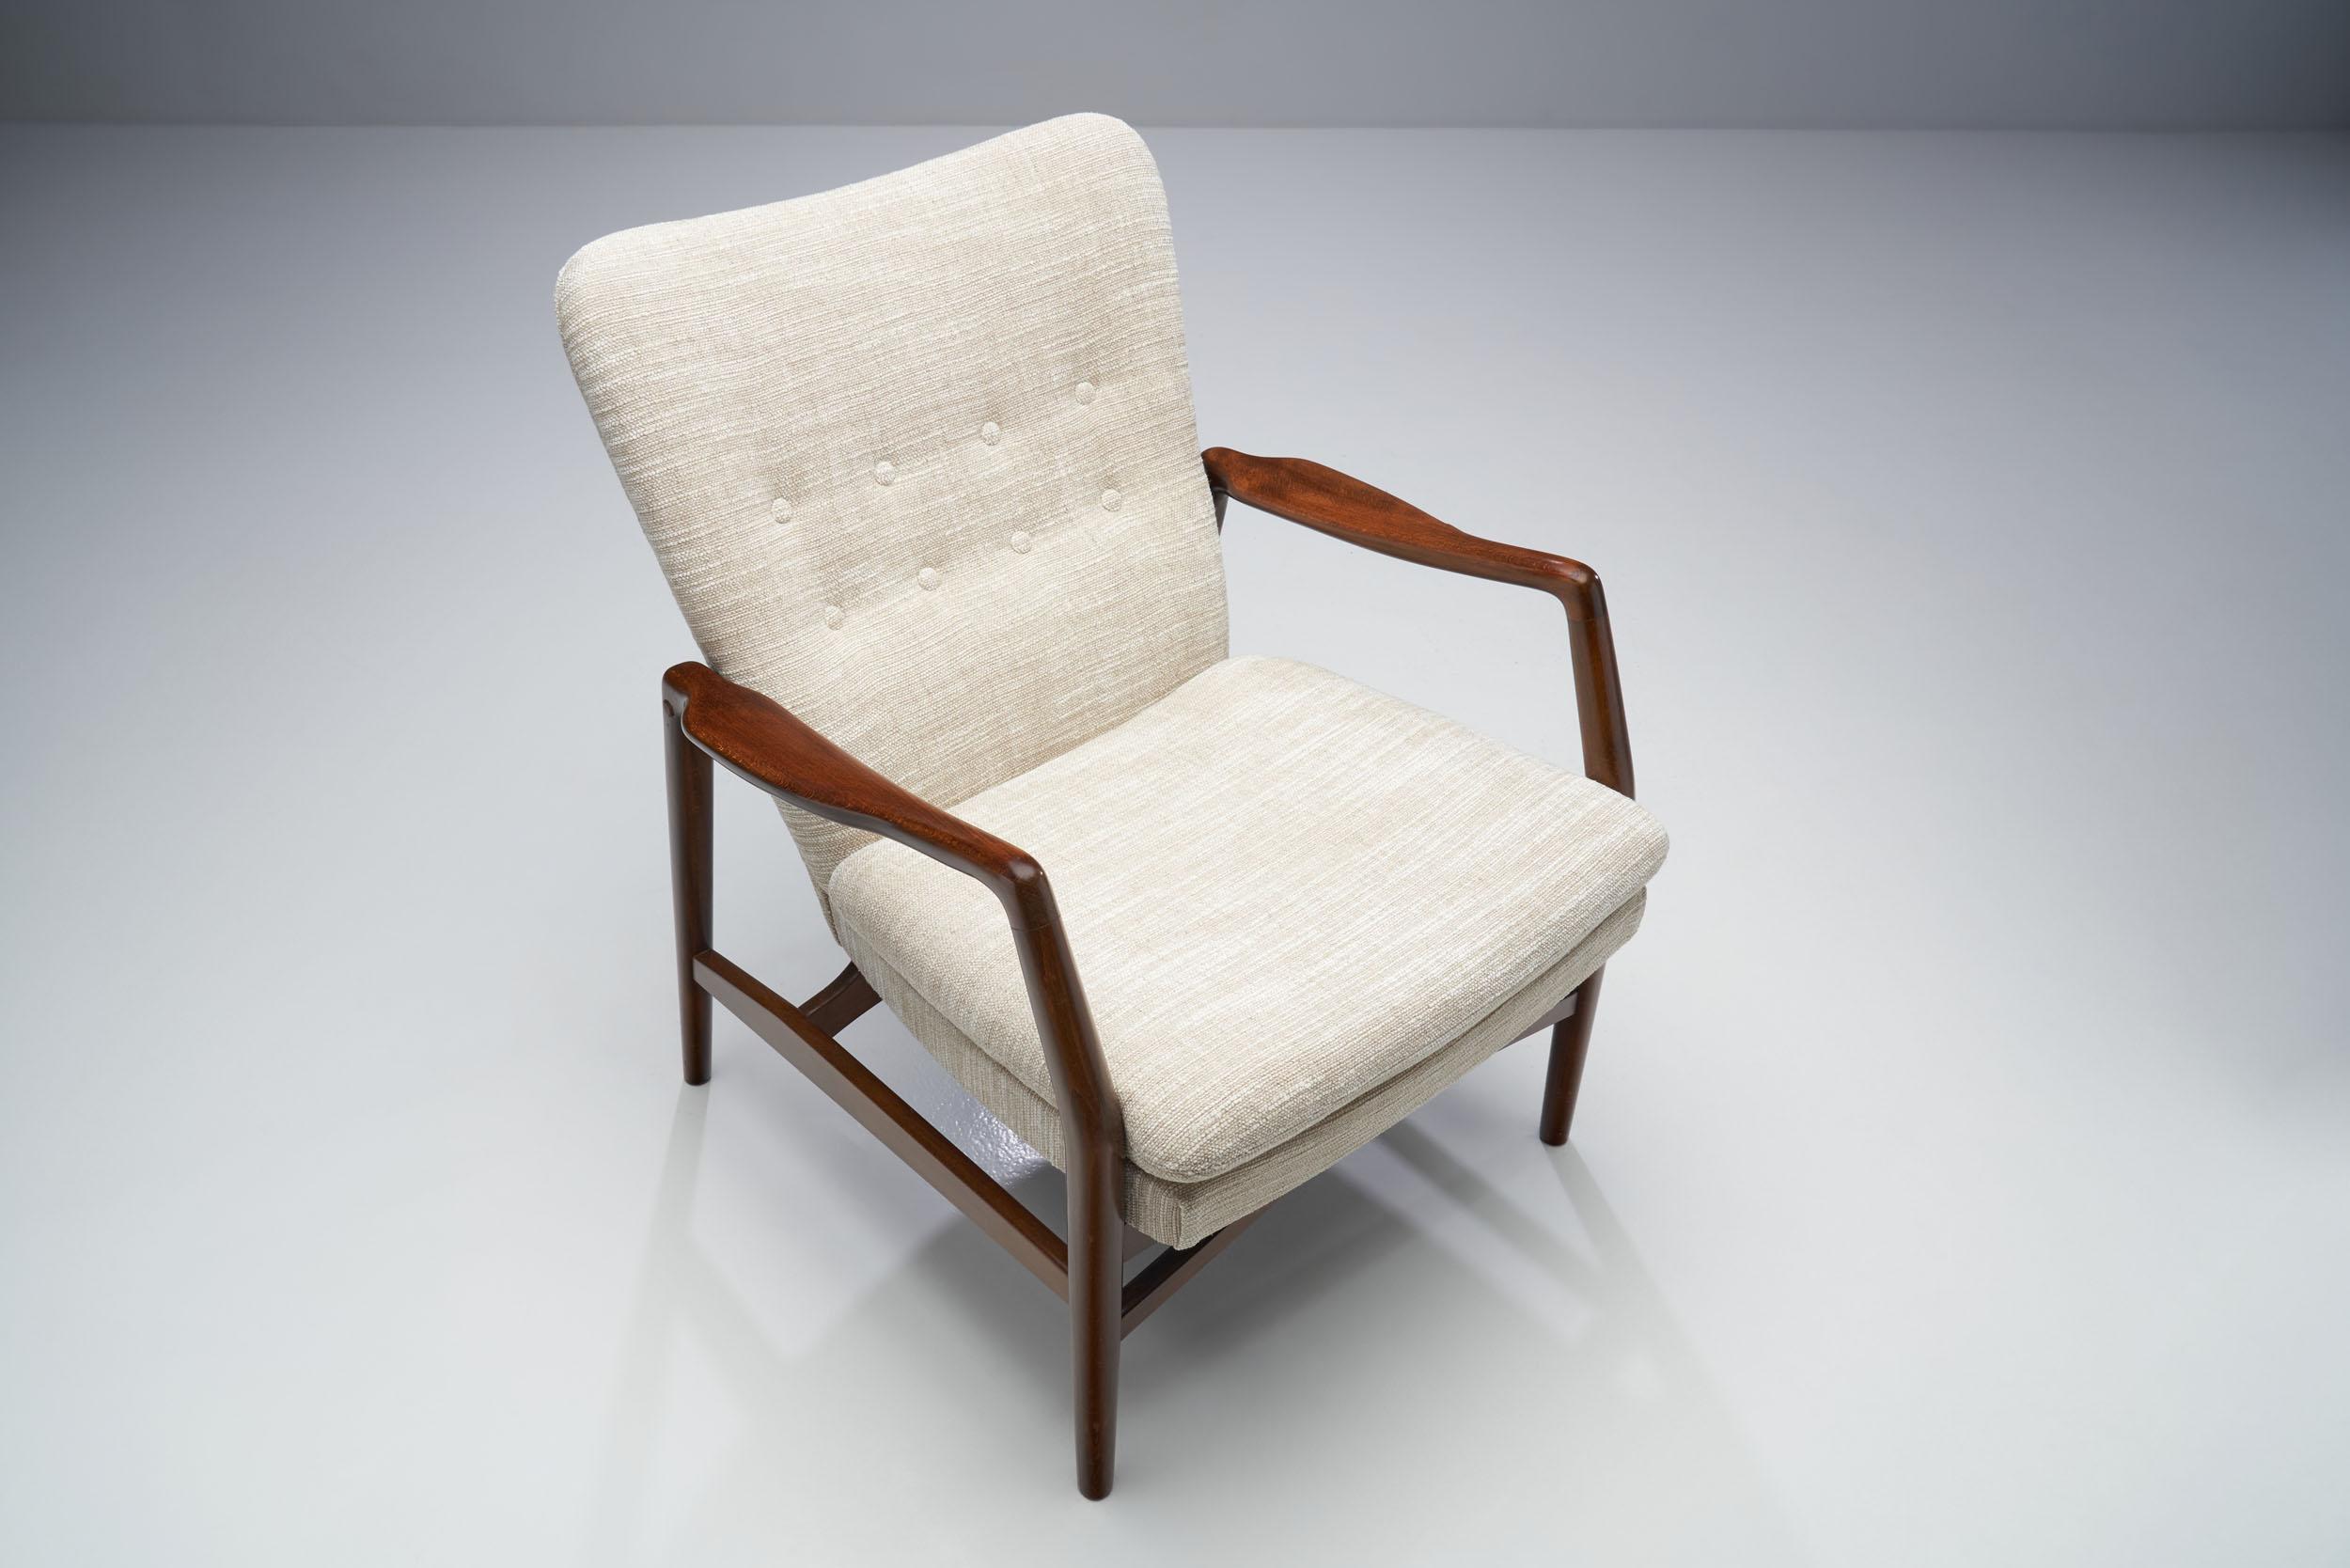 Kurt Olsen “Model 215” Easy Chair for Slagelse Møbelværk, Denmark 1954 For Sale 2